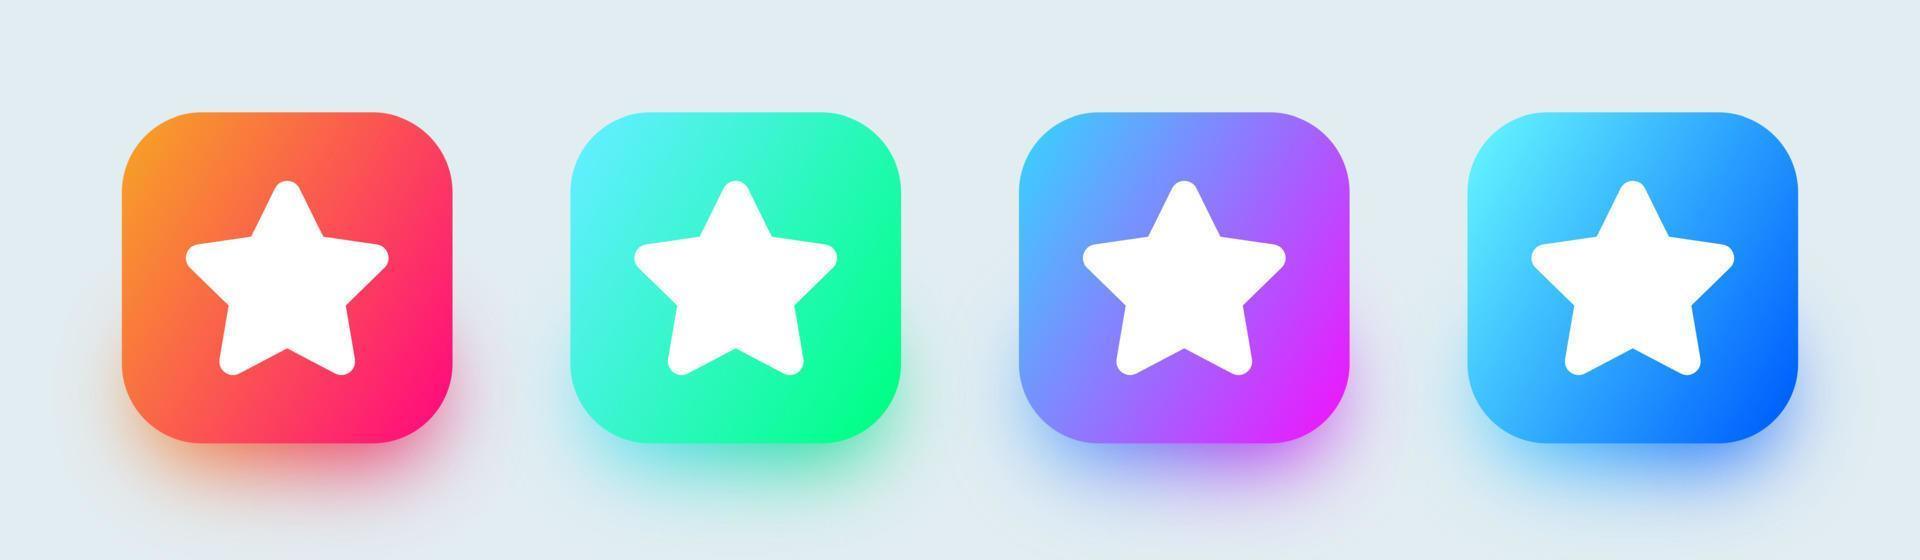 icono de estrellas en colores cuadrados y degradados. icono de vector de interfaz de usuario.